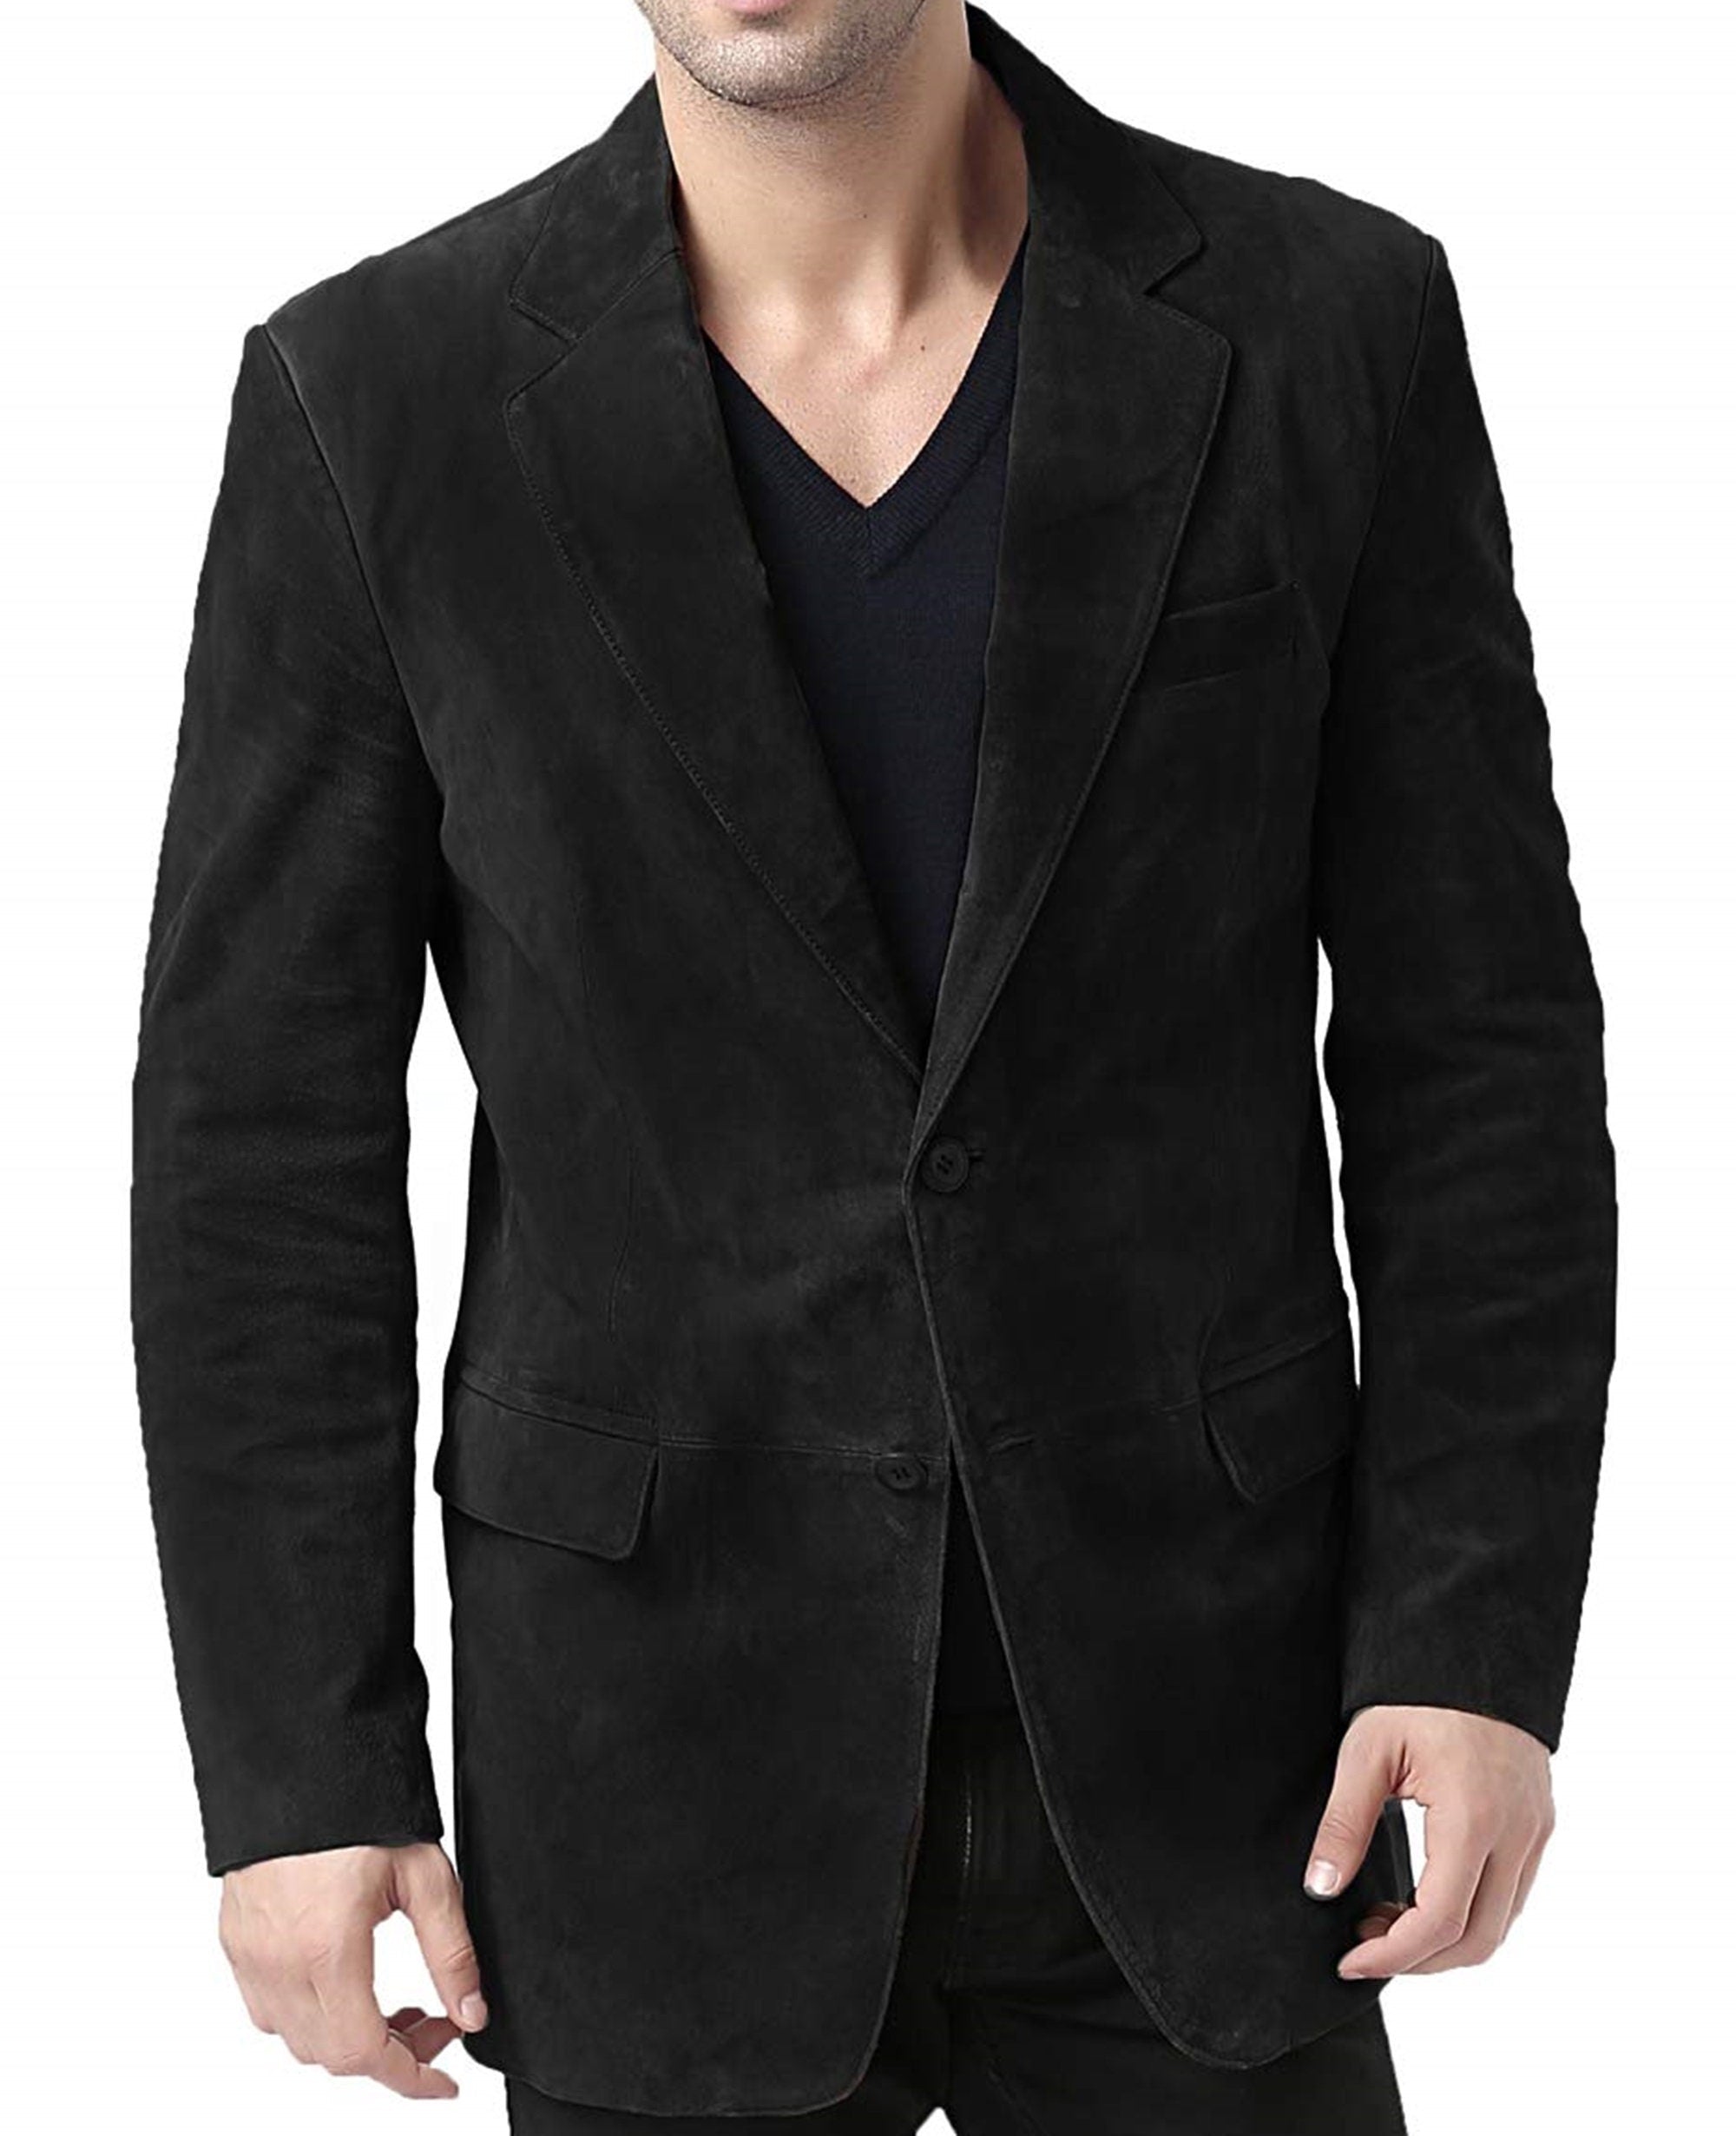 Black Suede Blazer Coat For Mens